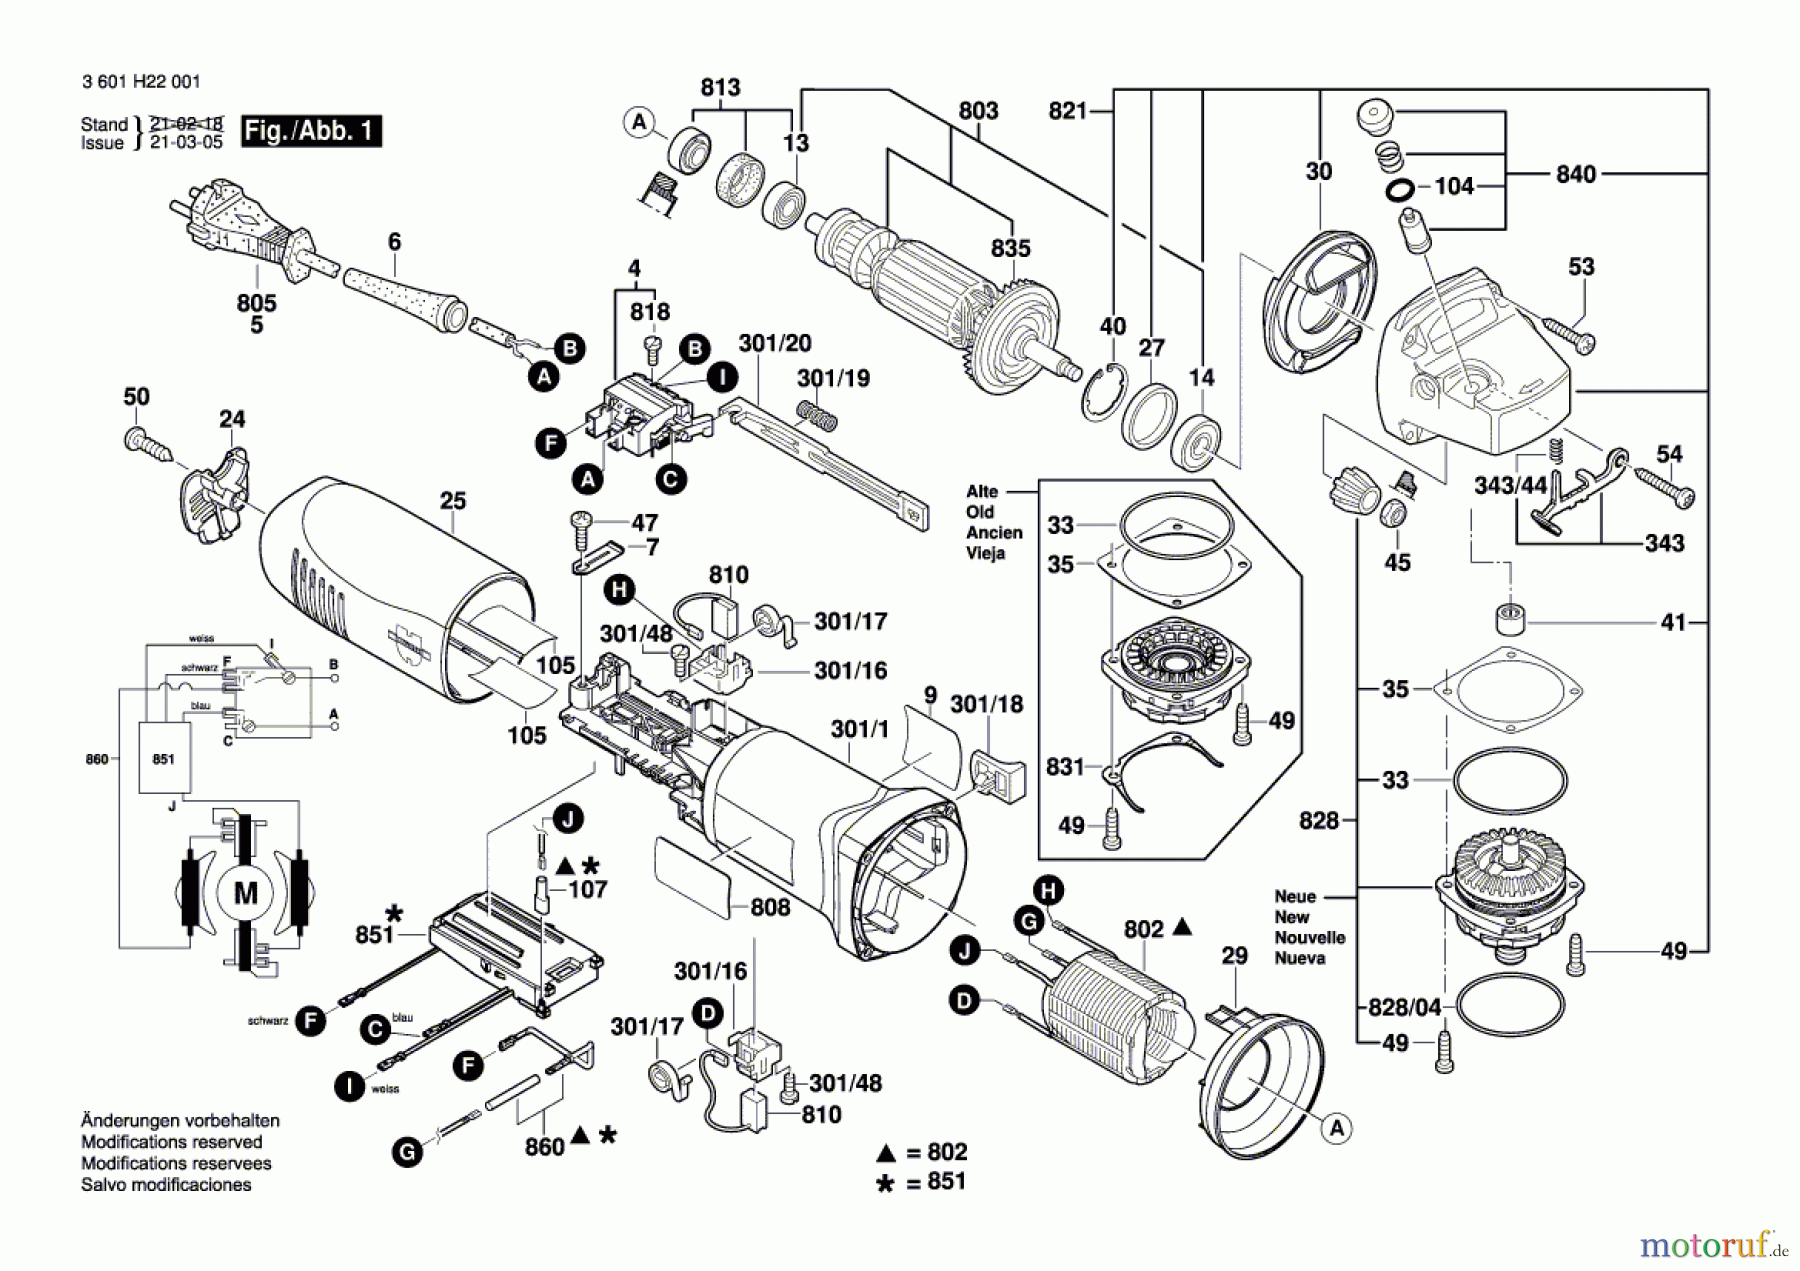  Bosch Werkzeug Winkelschleifer EWS 125-S Seite 1